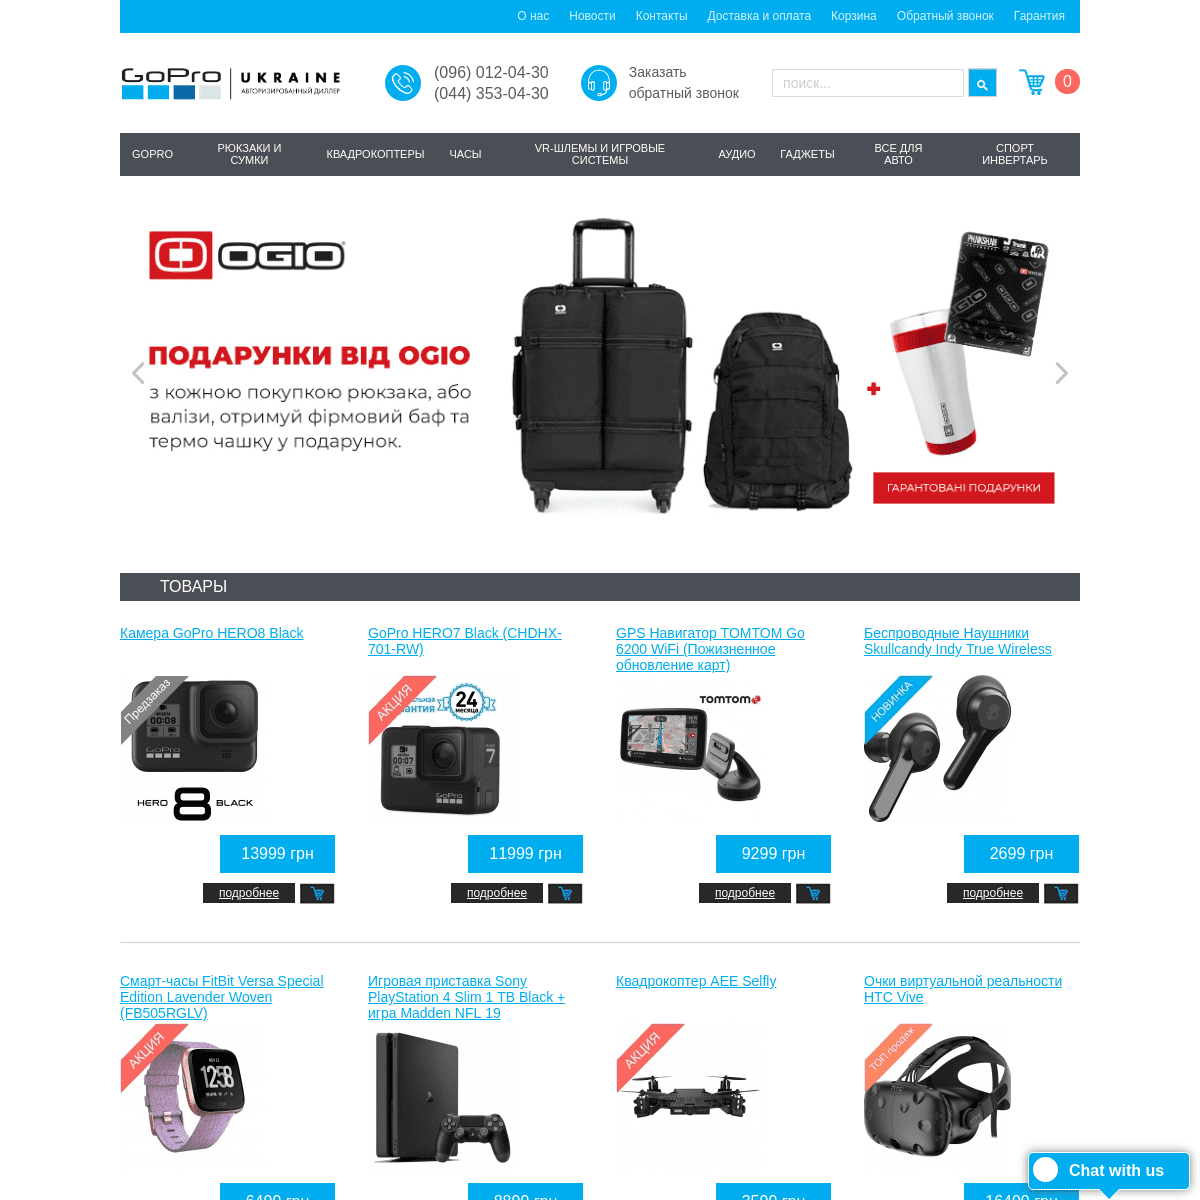 Камеры GoPro HERO 7 и GoPro HERO 5 купить (ГоПро) цена - Официальный магазин GoPro в Украине